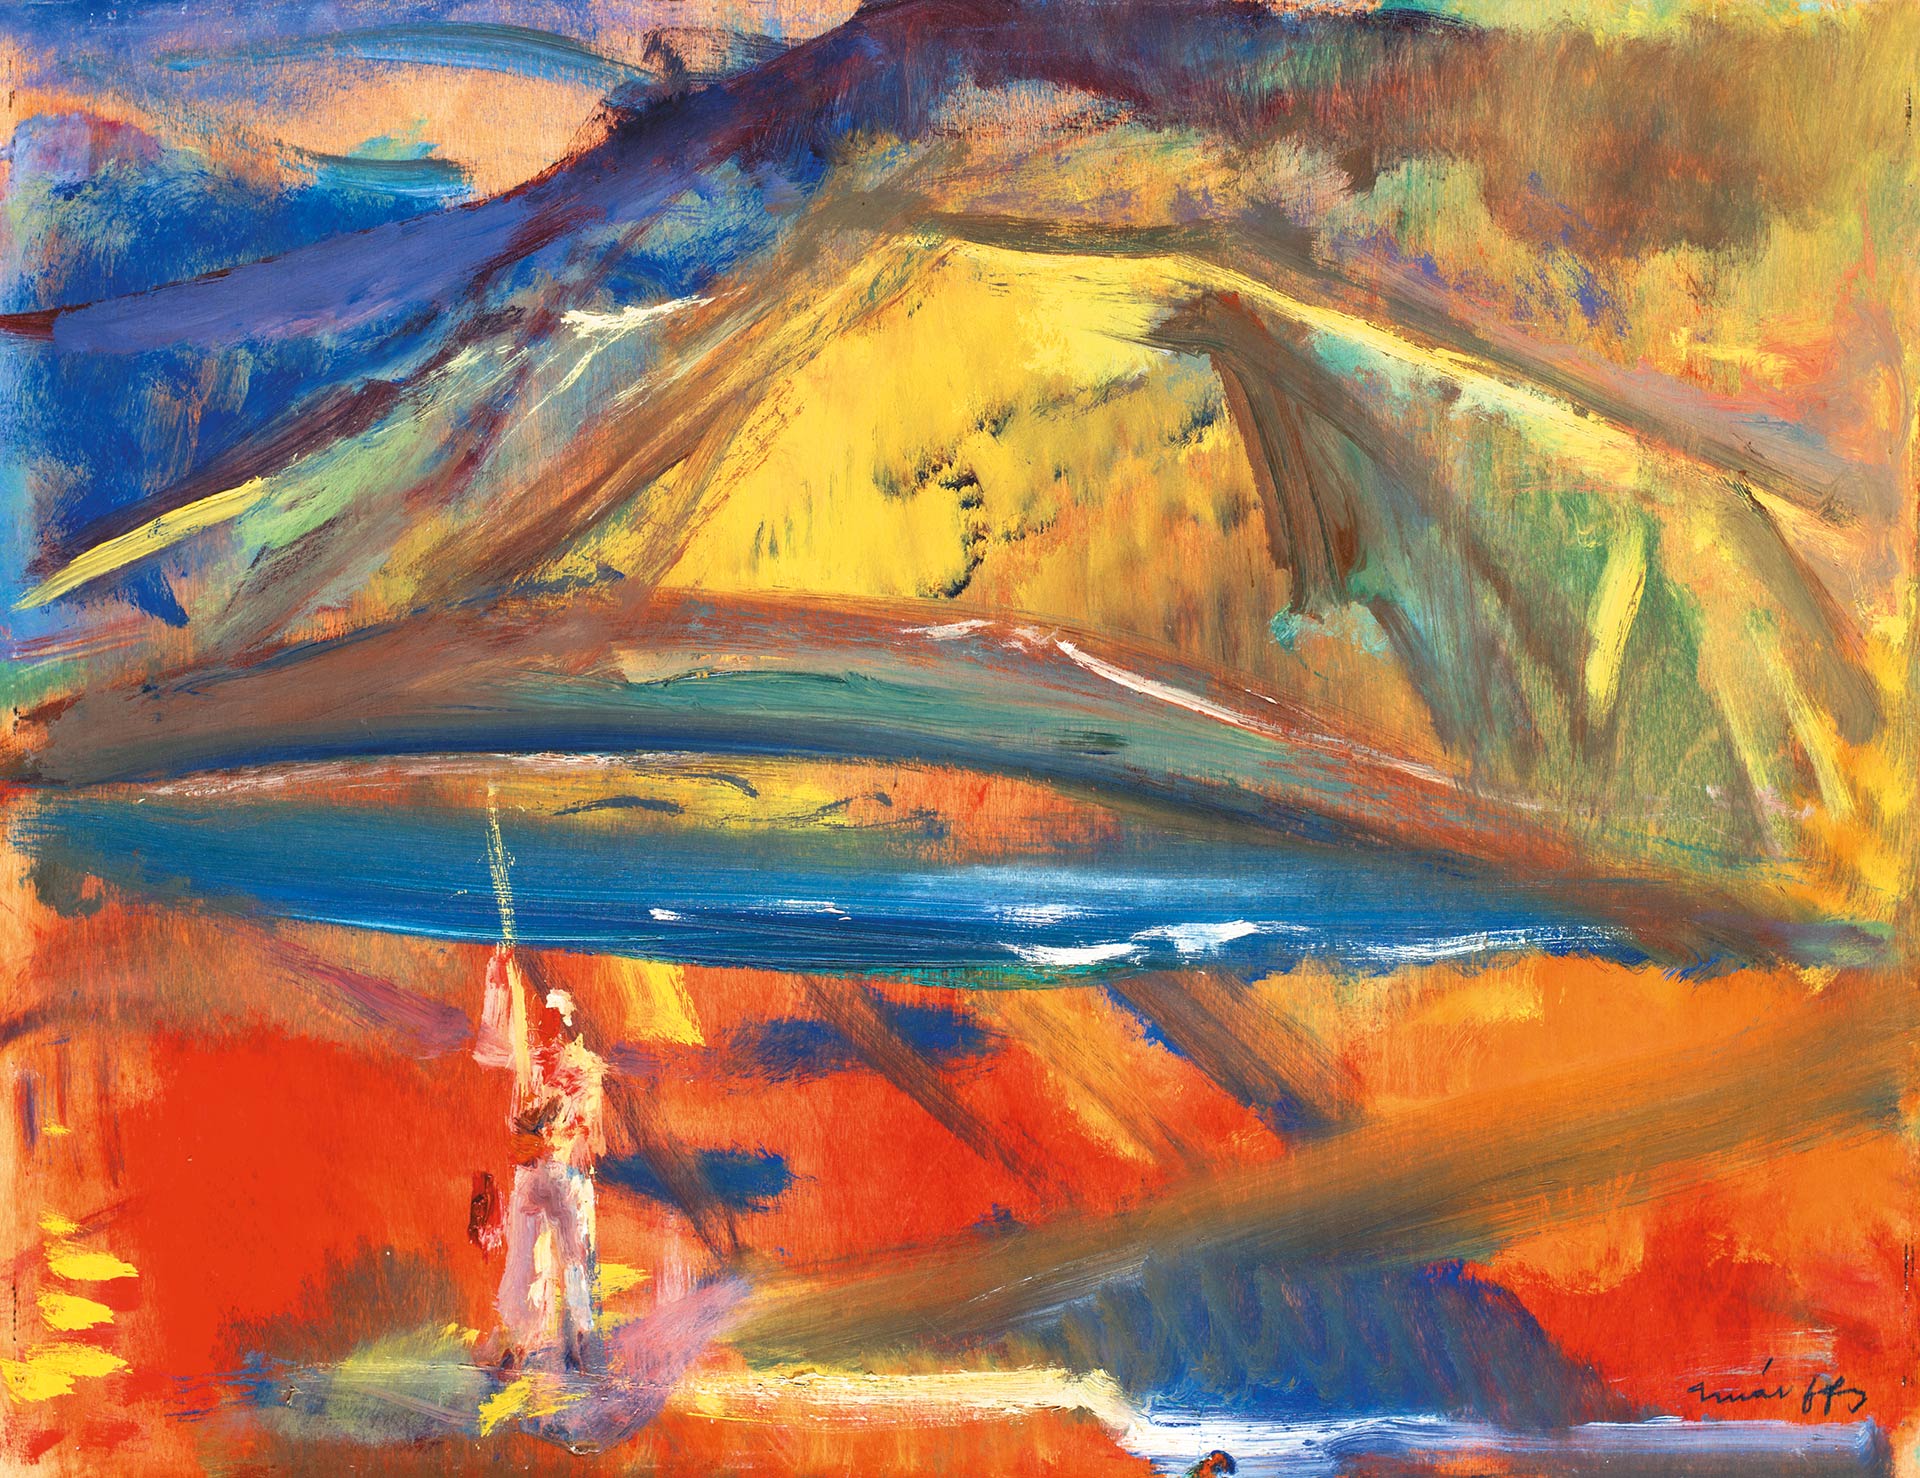 Márffy Ödön (1878-1959) Sziklás vízpart (Sziklás part), 1948 körül